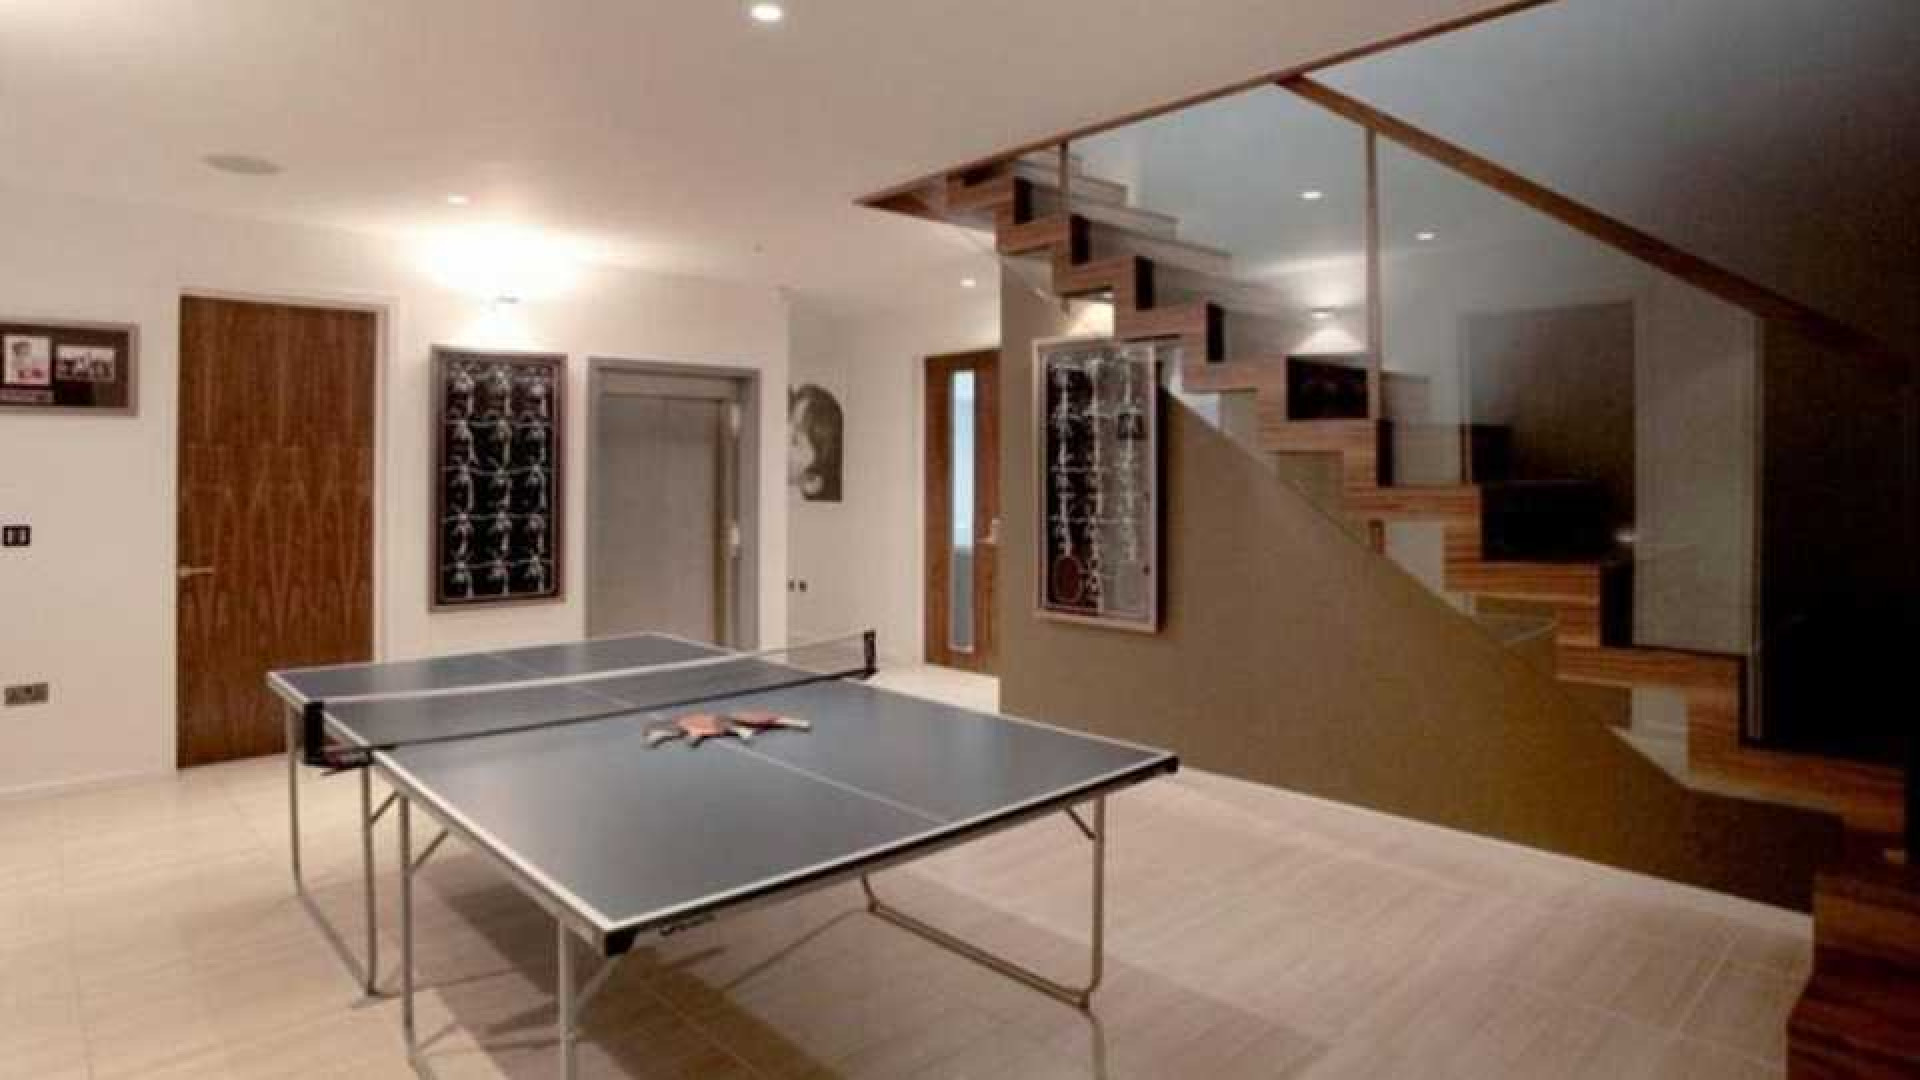 Memphis Depay huurt waanzinnig luxe villa in Manchester met eigen indoor voetbalveldje. Zie foto's 4